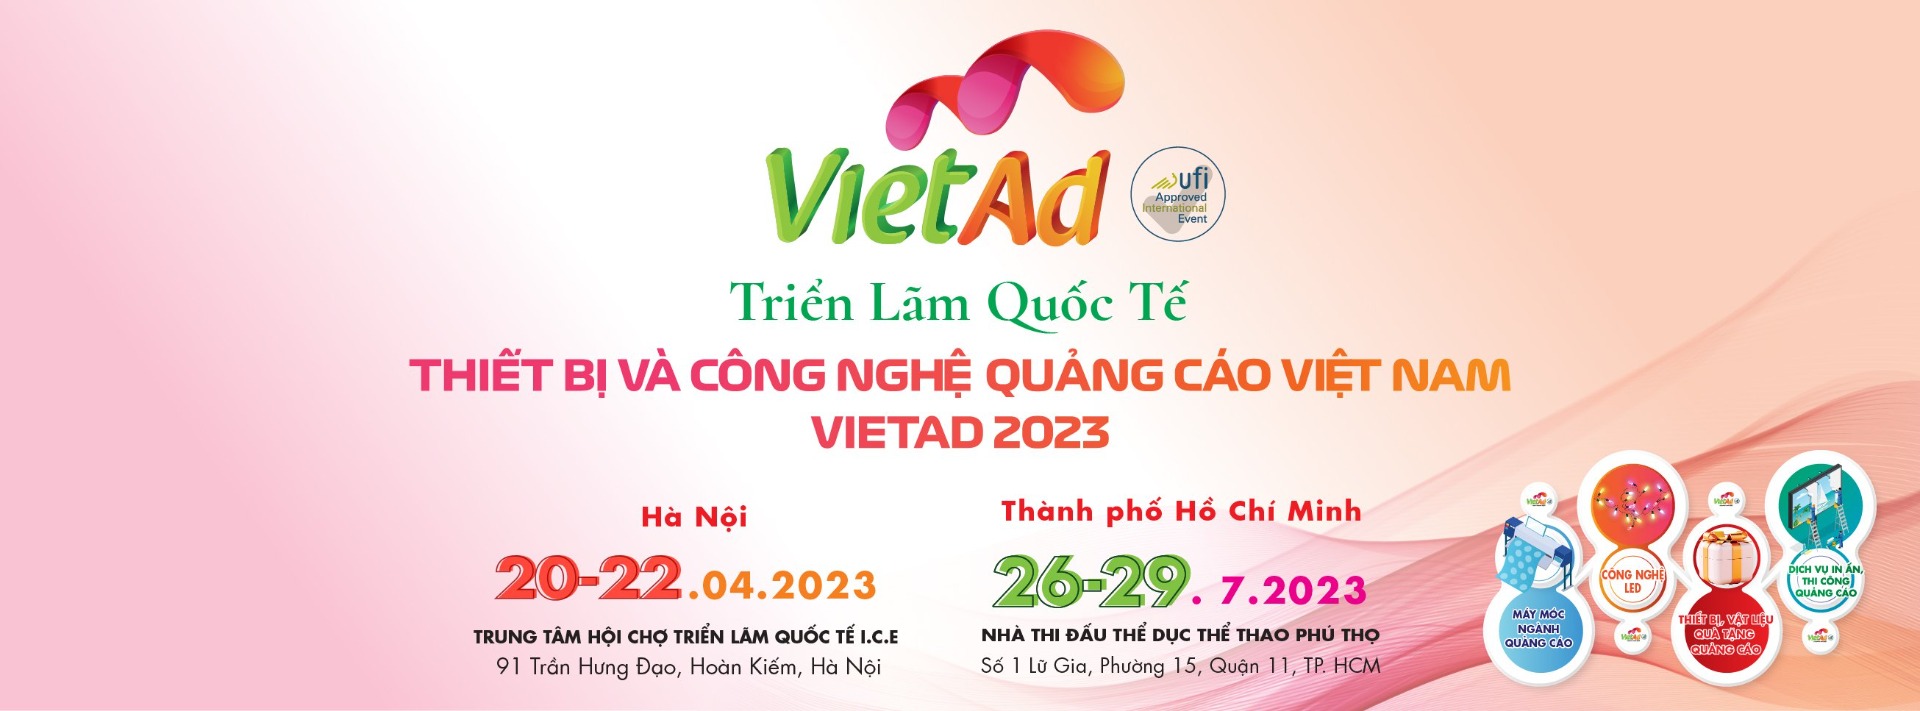 Triển lãm VietAd 2023 về Thiết bị và Công nghệ Quảng cáo Việt Nam – VietAd